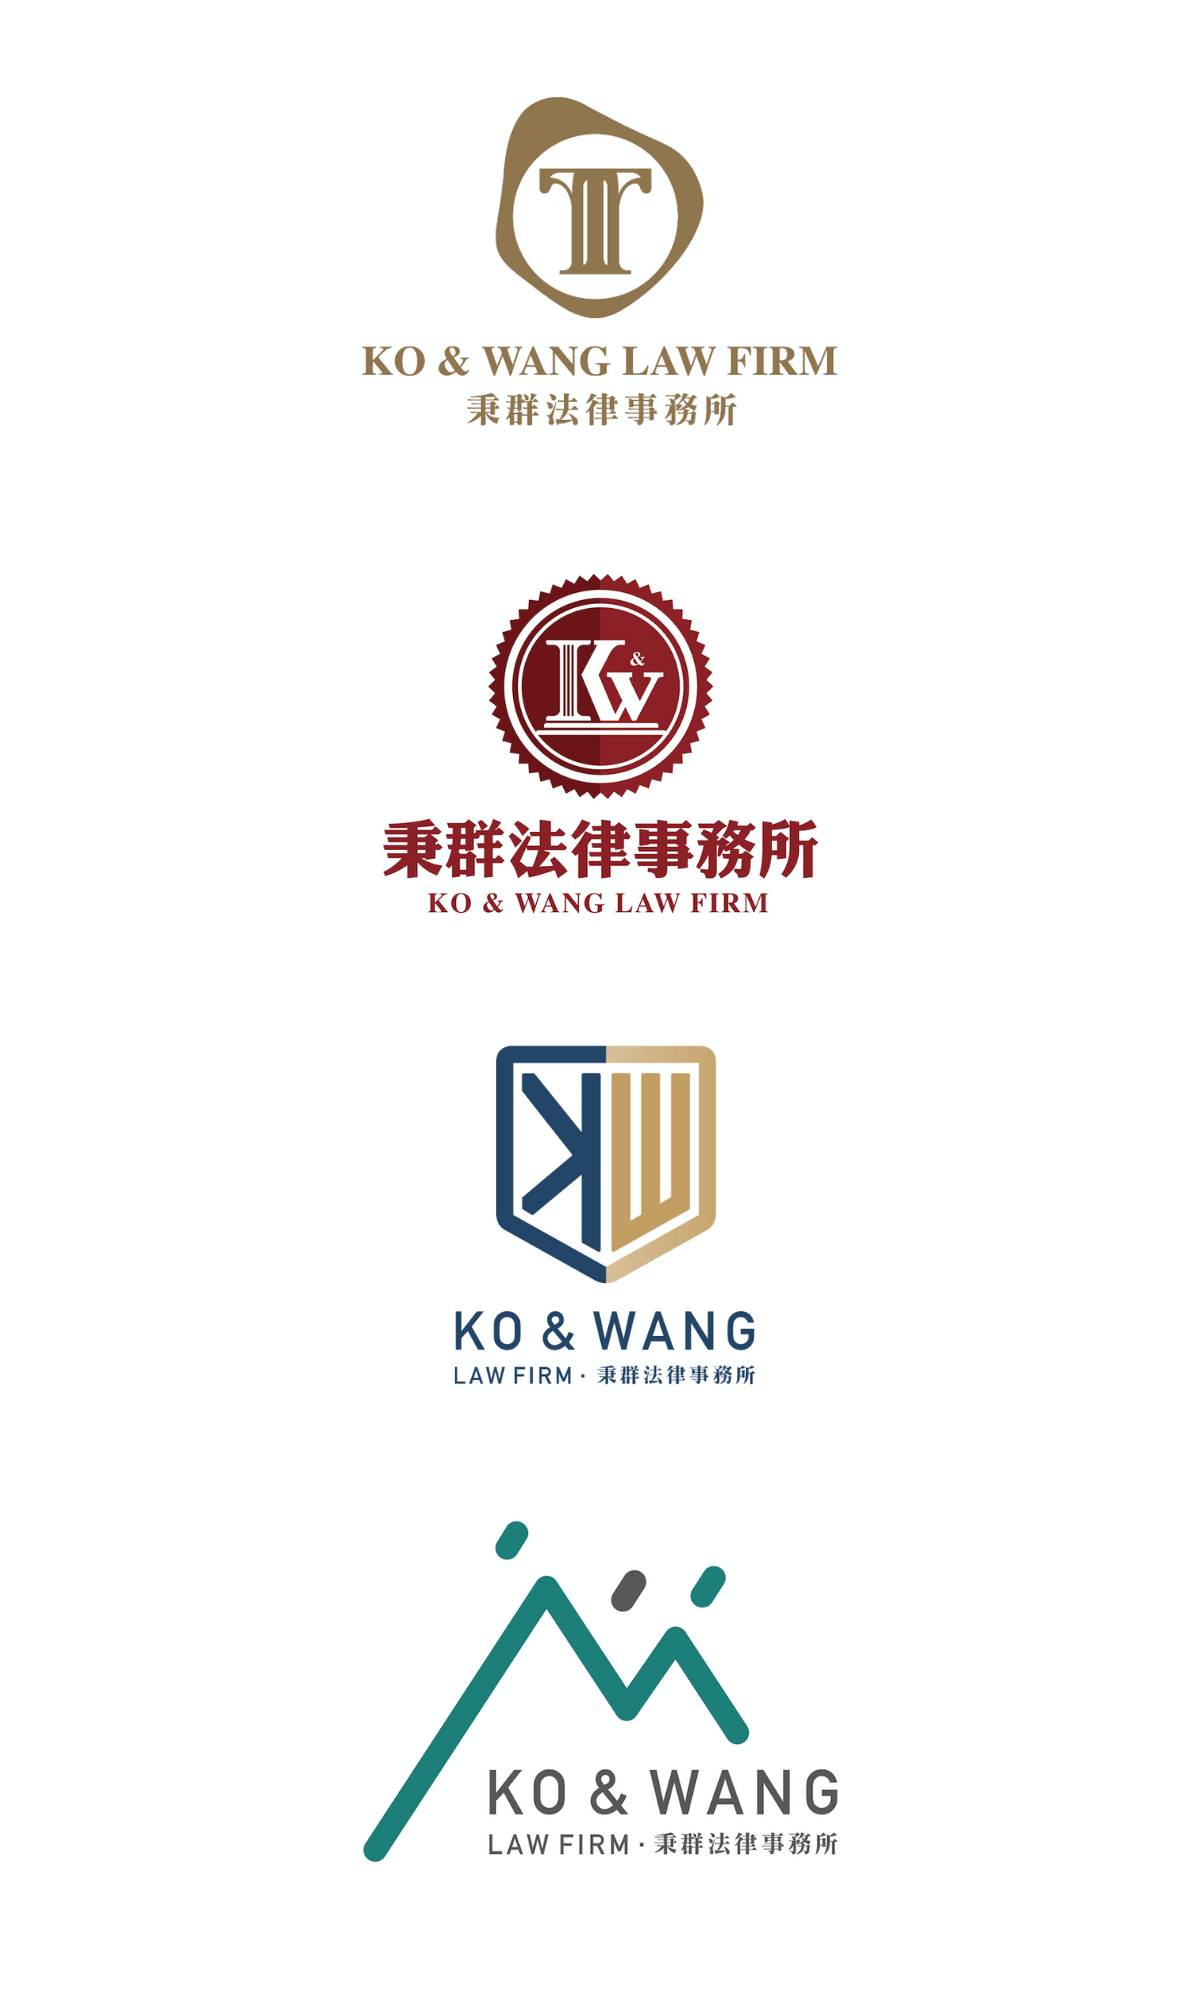 秉群律師事務所 Ko & Wang Law Firm Logo Detail